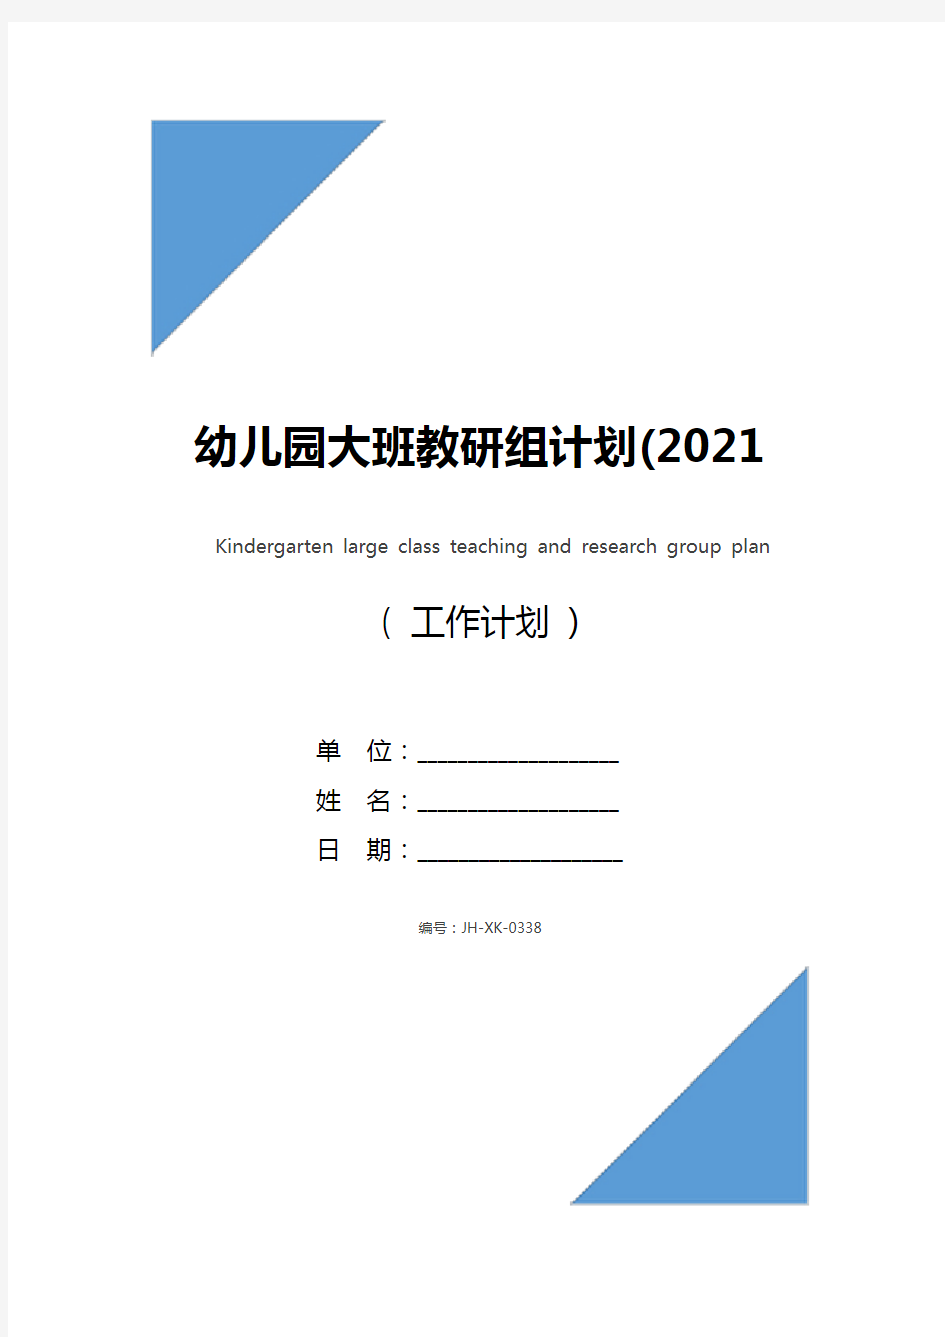 幼儿园大班教研组计划(2021版)